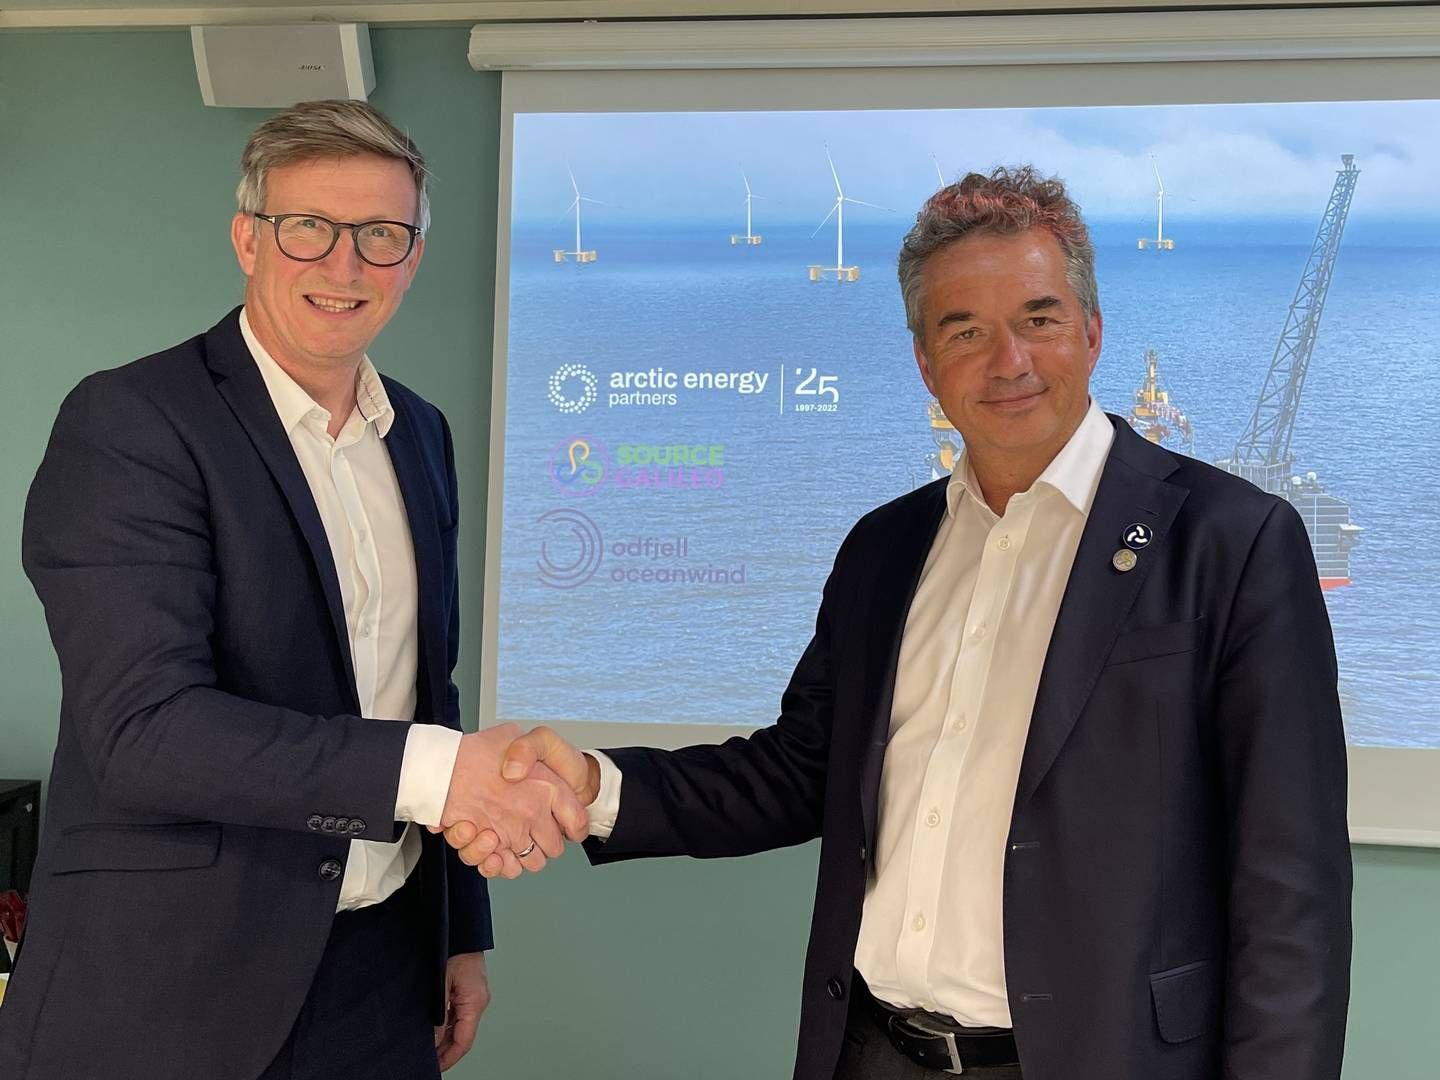 SAMARBEID: Kjell Giæver (t.v.) og Gunnar Birkeland i henholdsvis Arctic Energy Partners og Source Galileo, skal samarbeide om realisering av Goliatvind. | Foto: Arctic Energy Partners